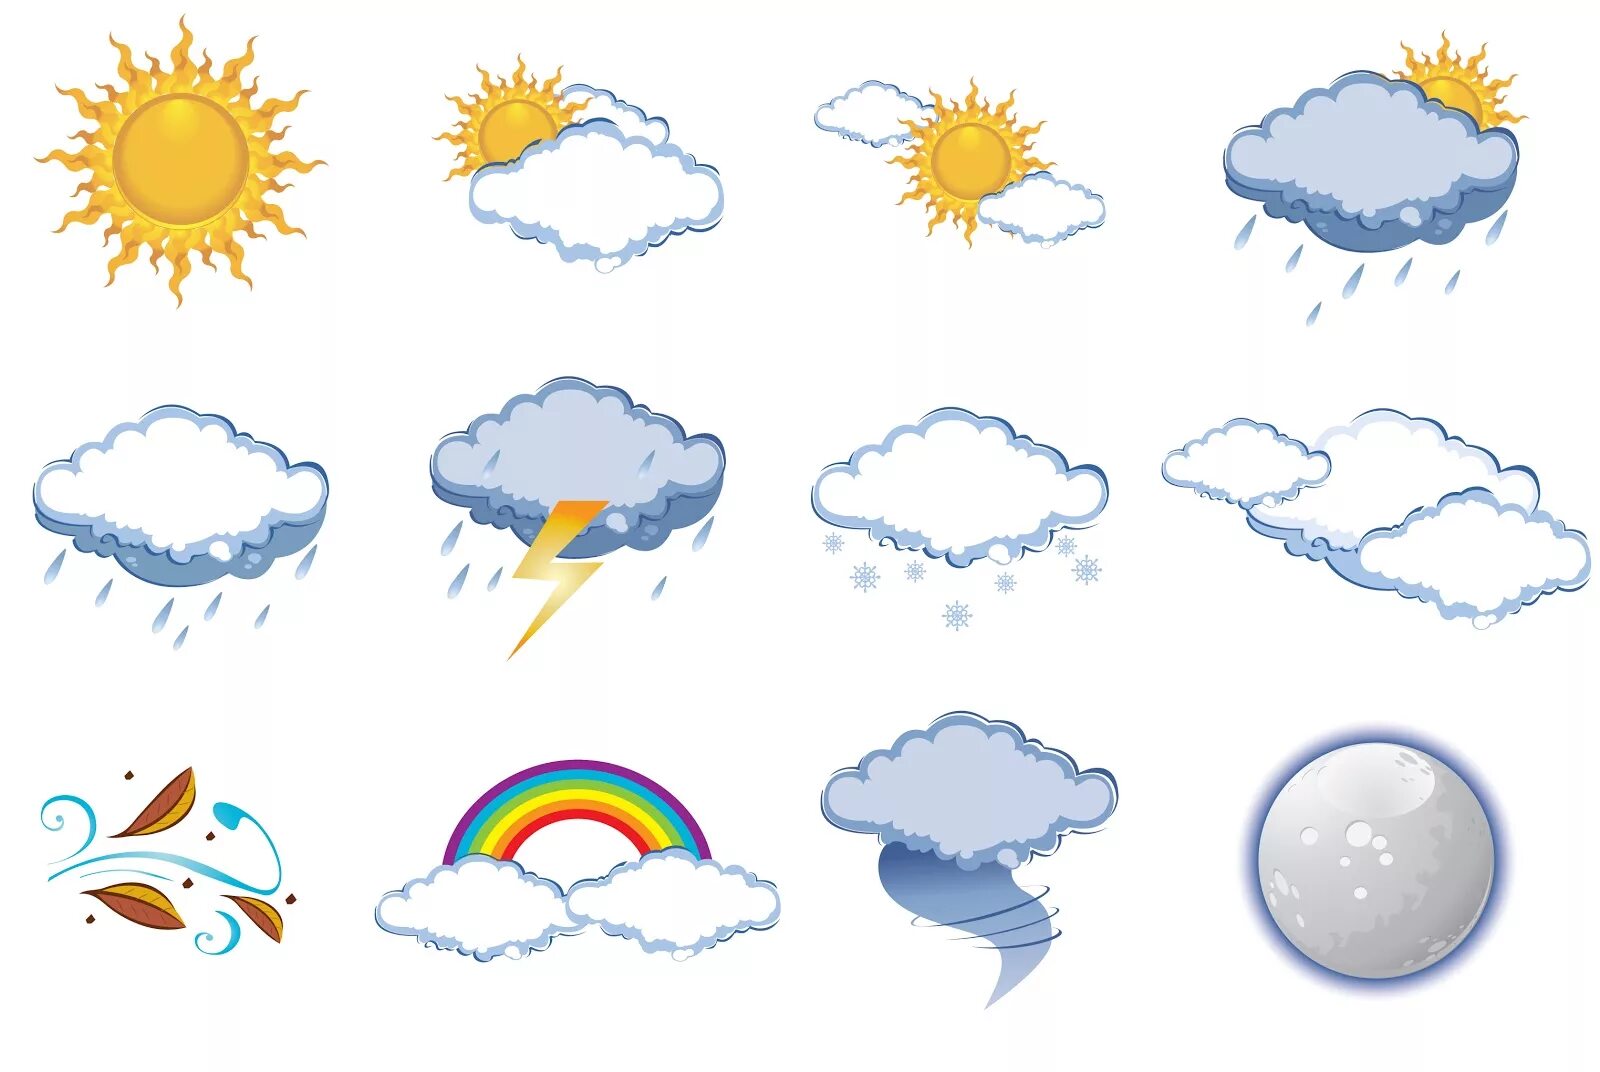 Погодные явления картинки для детей. Погода на английском языке. Gjujlf ZF fzukbqcrjv. Погода картинки на английском для детей. Поговорить на счет погоды